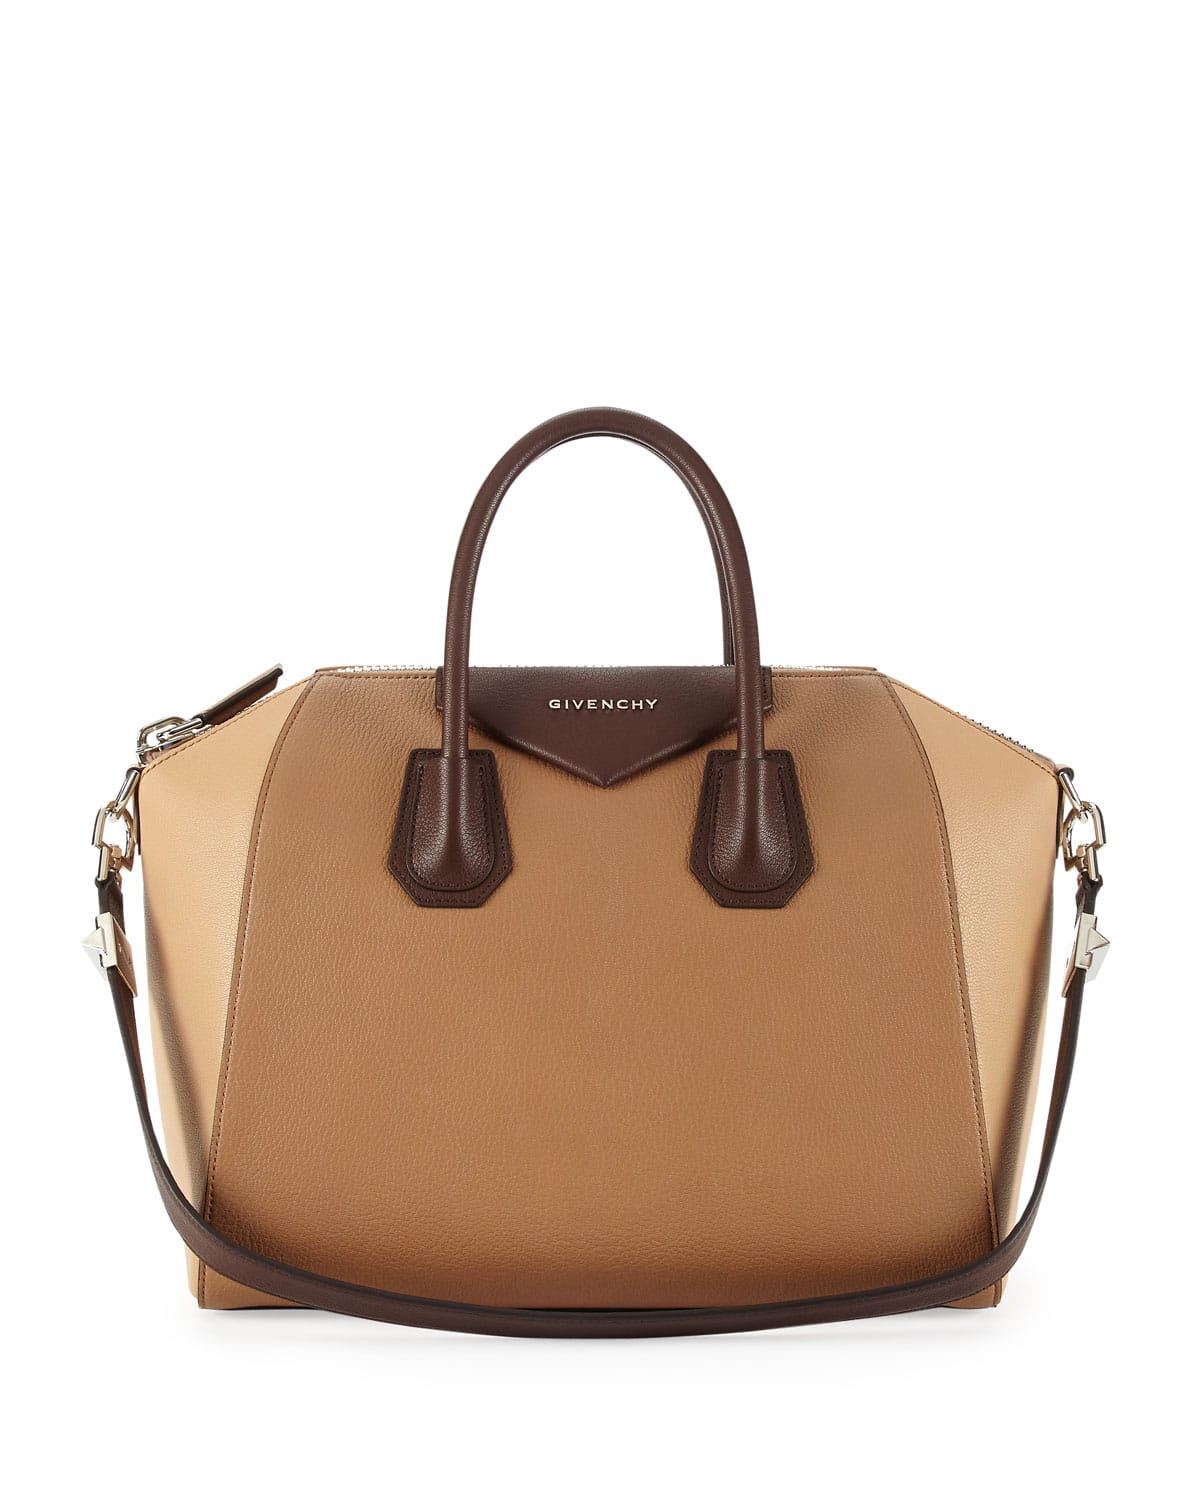 Givenchy Antigona Bag Summer 2014 Prices